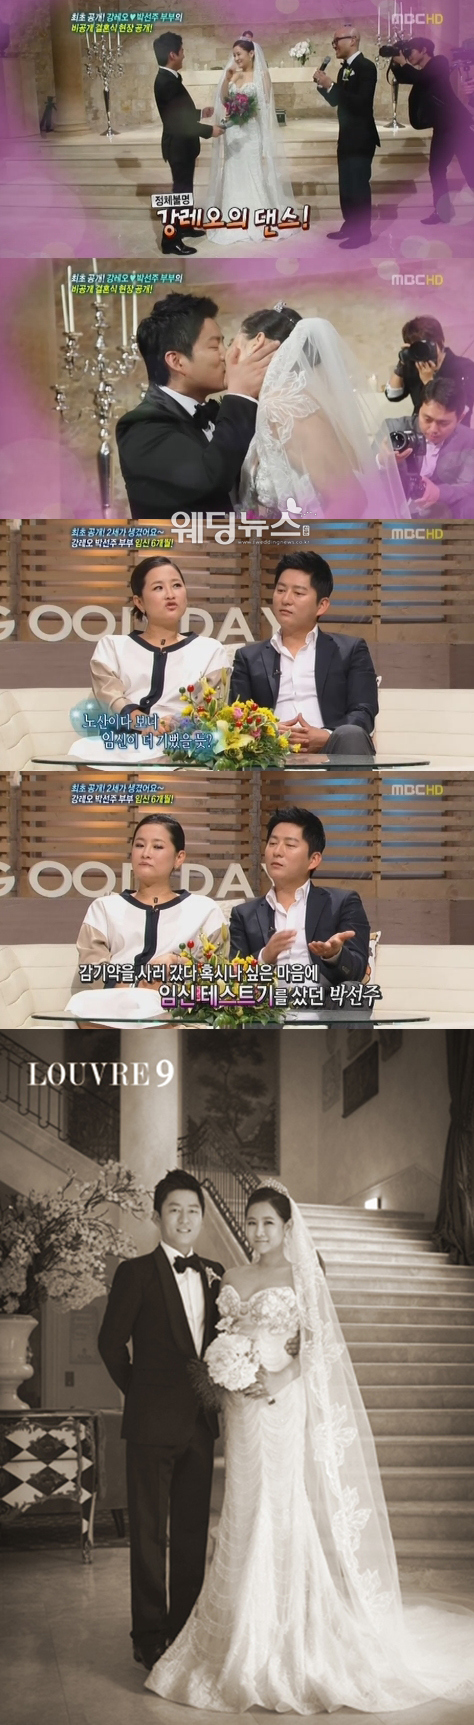 박선주-강레오 부부가 MBC '기분좋은 날'에 출연해 결혼식 영상과 임신 사실을 알았던 순간의 기쁨을 공개했다. ⓒMBC